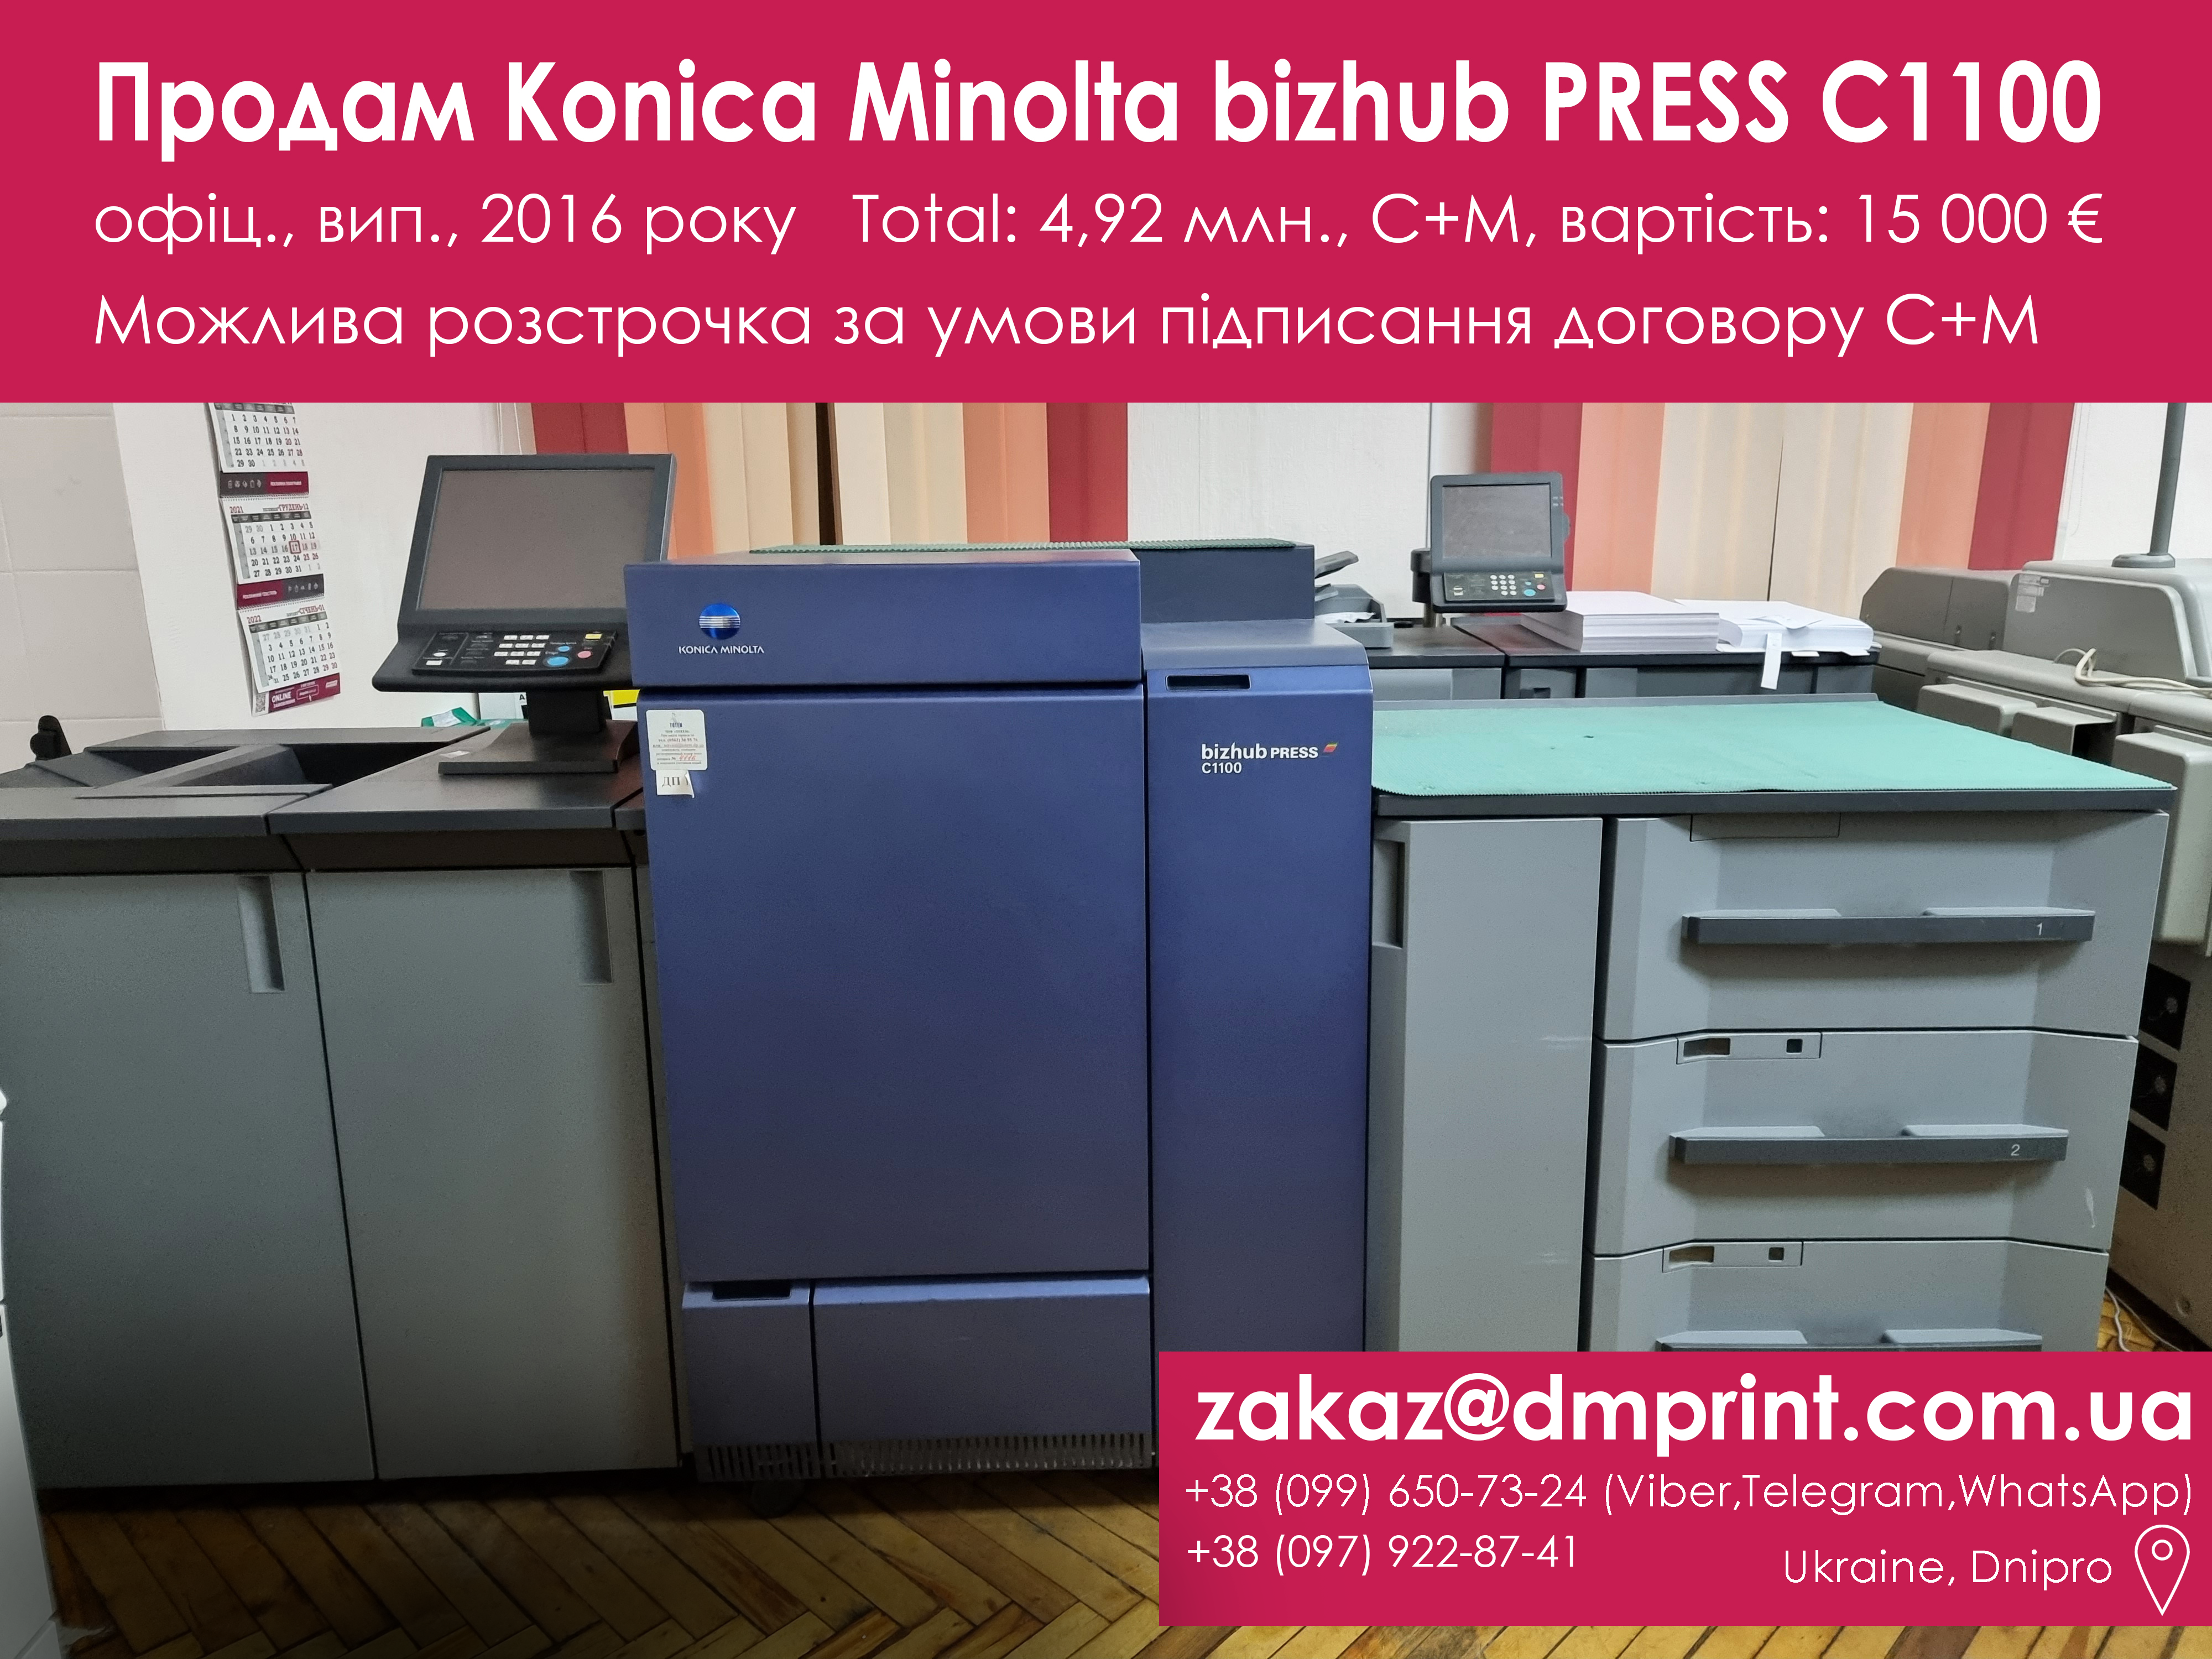 Продам Промисловий МФУ Konica Minolta bizhub PRESS C1100